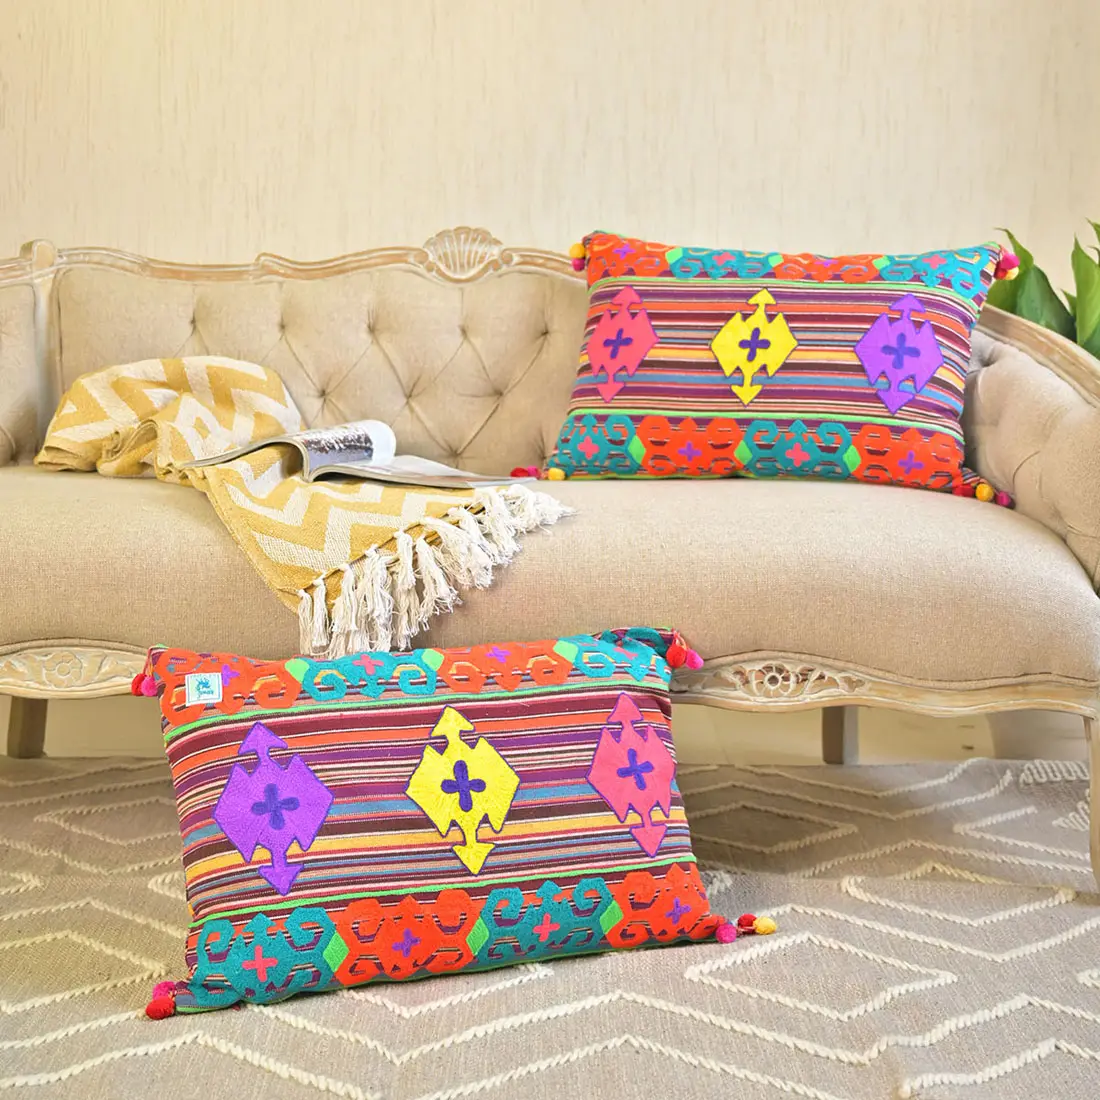 Grosir bantal ruang tamu penutup bantal Rumah India 16x24 bantal panjang tenun warna-warni bantal desainer buatan tangan 40x60cm